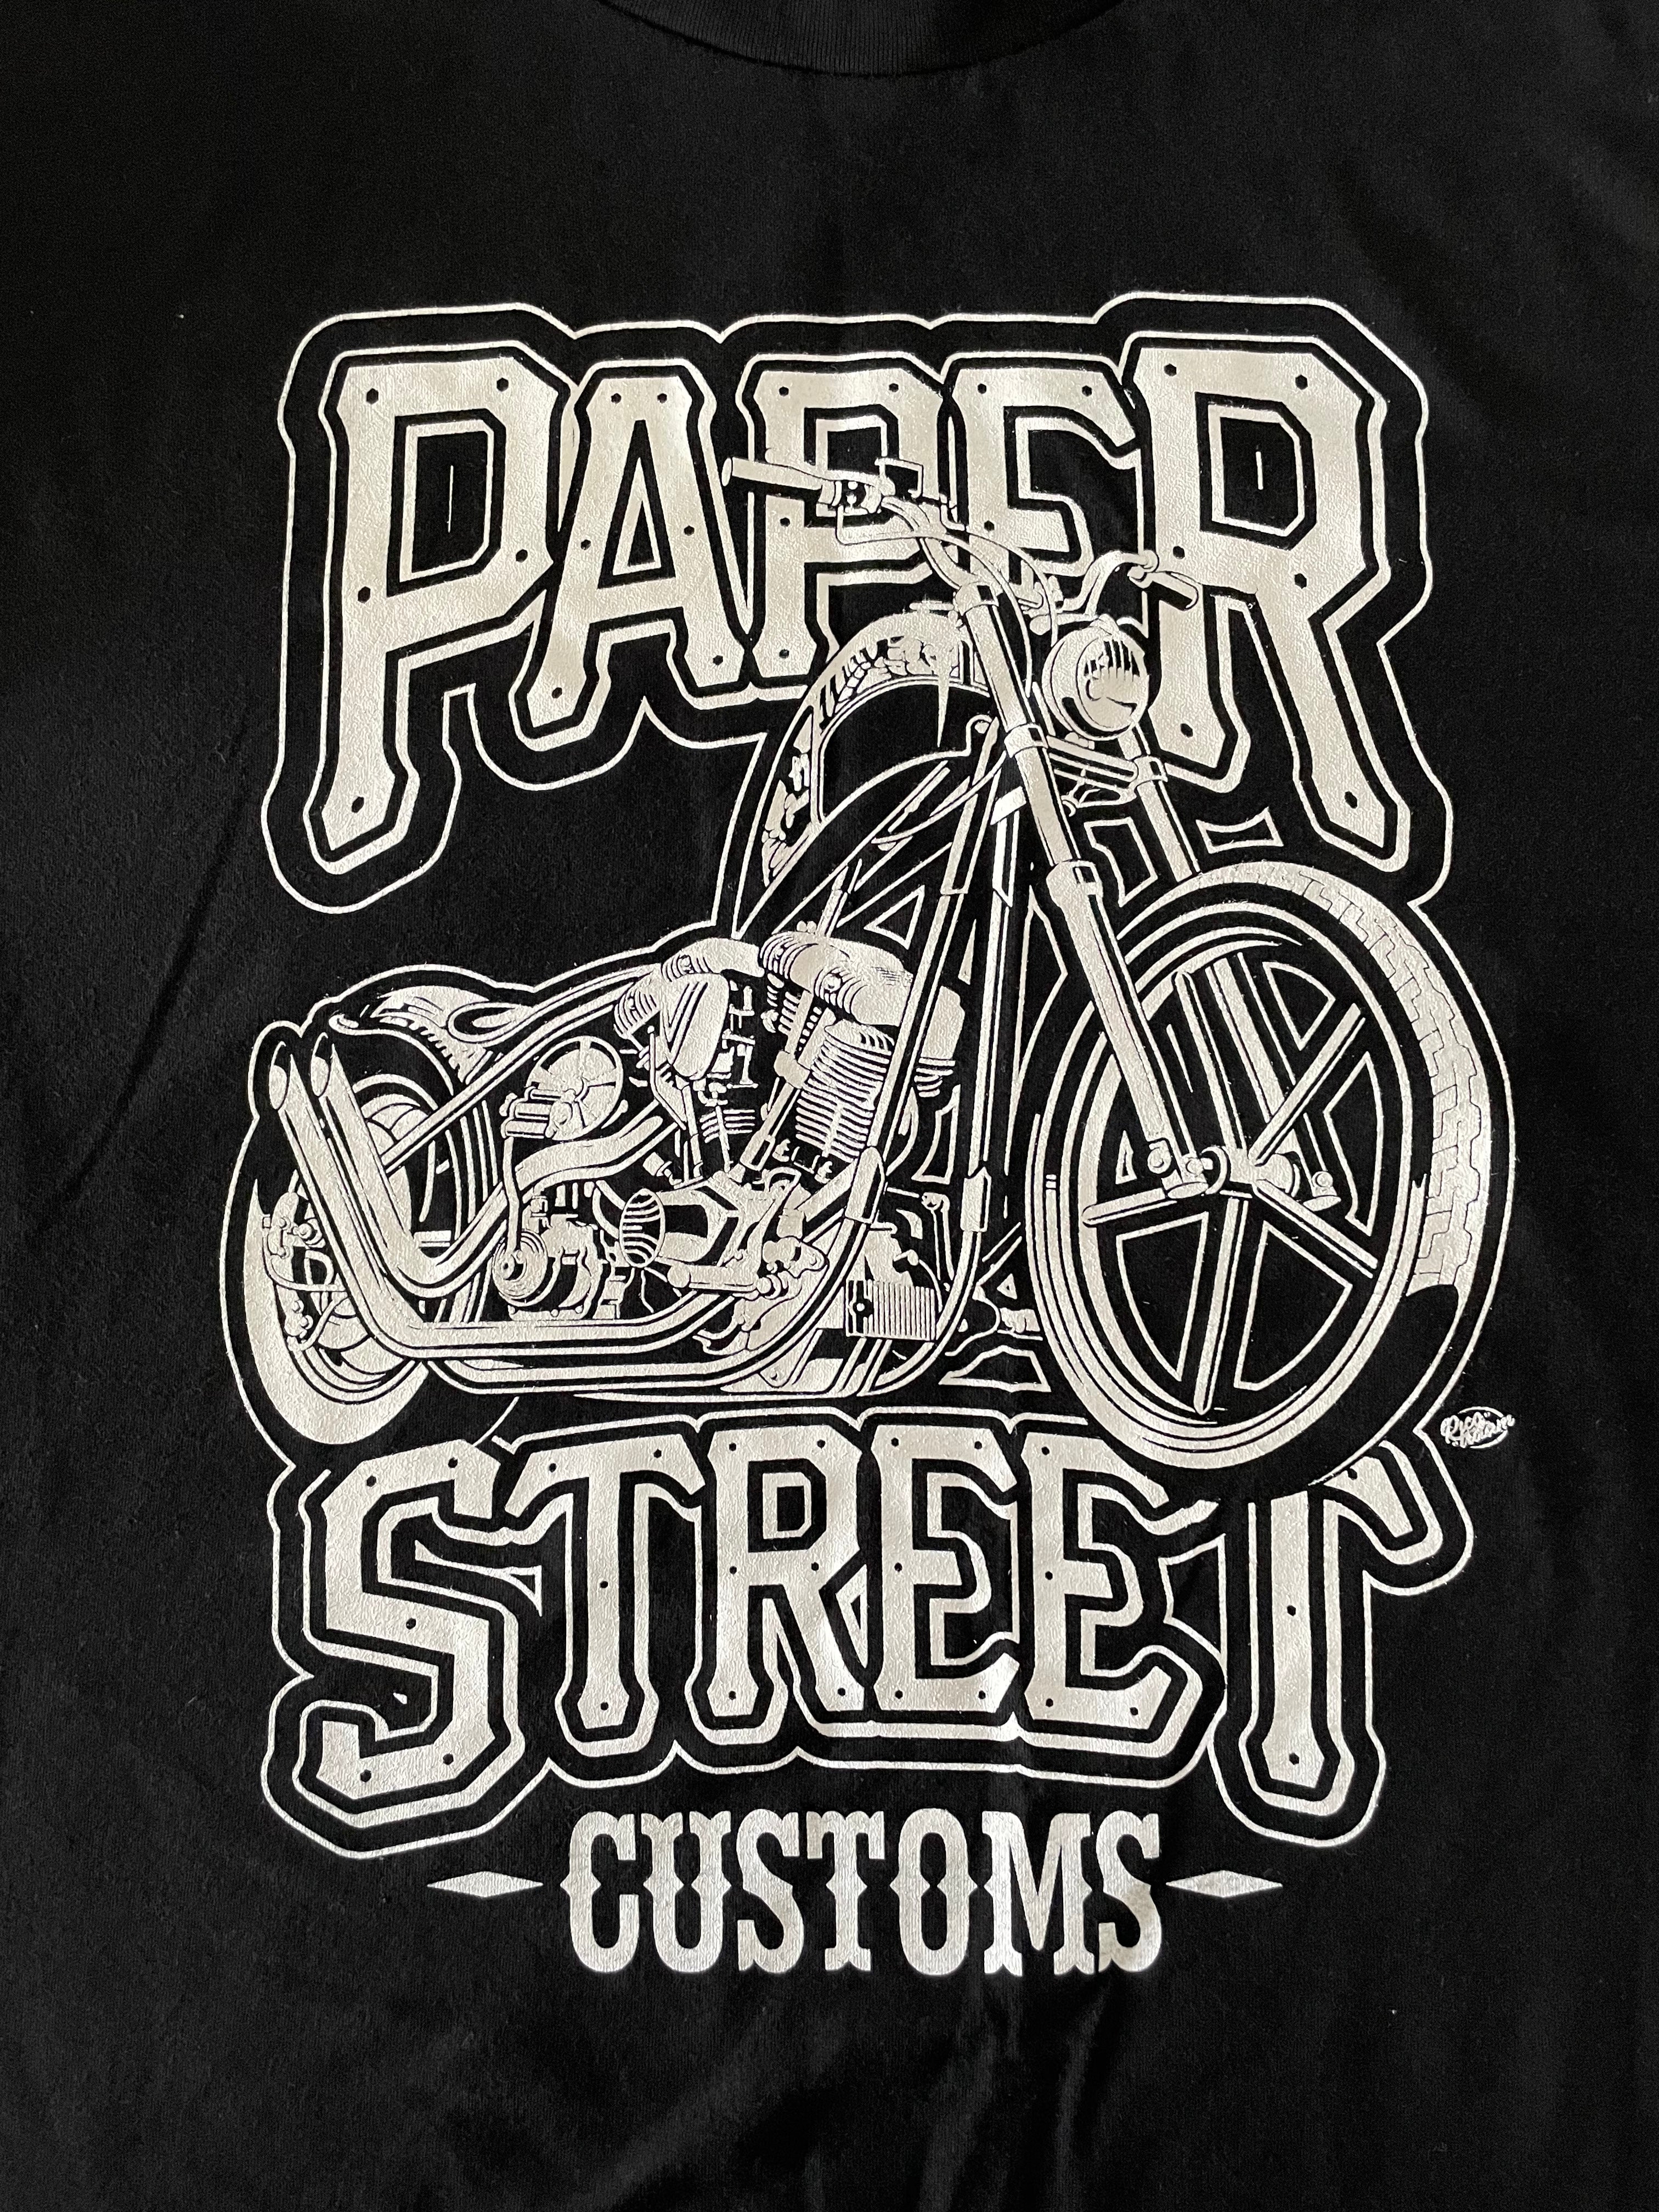 Paper Street Customs Shirt